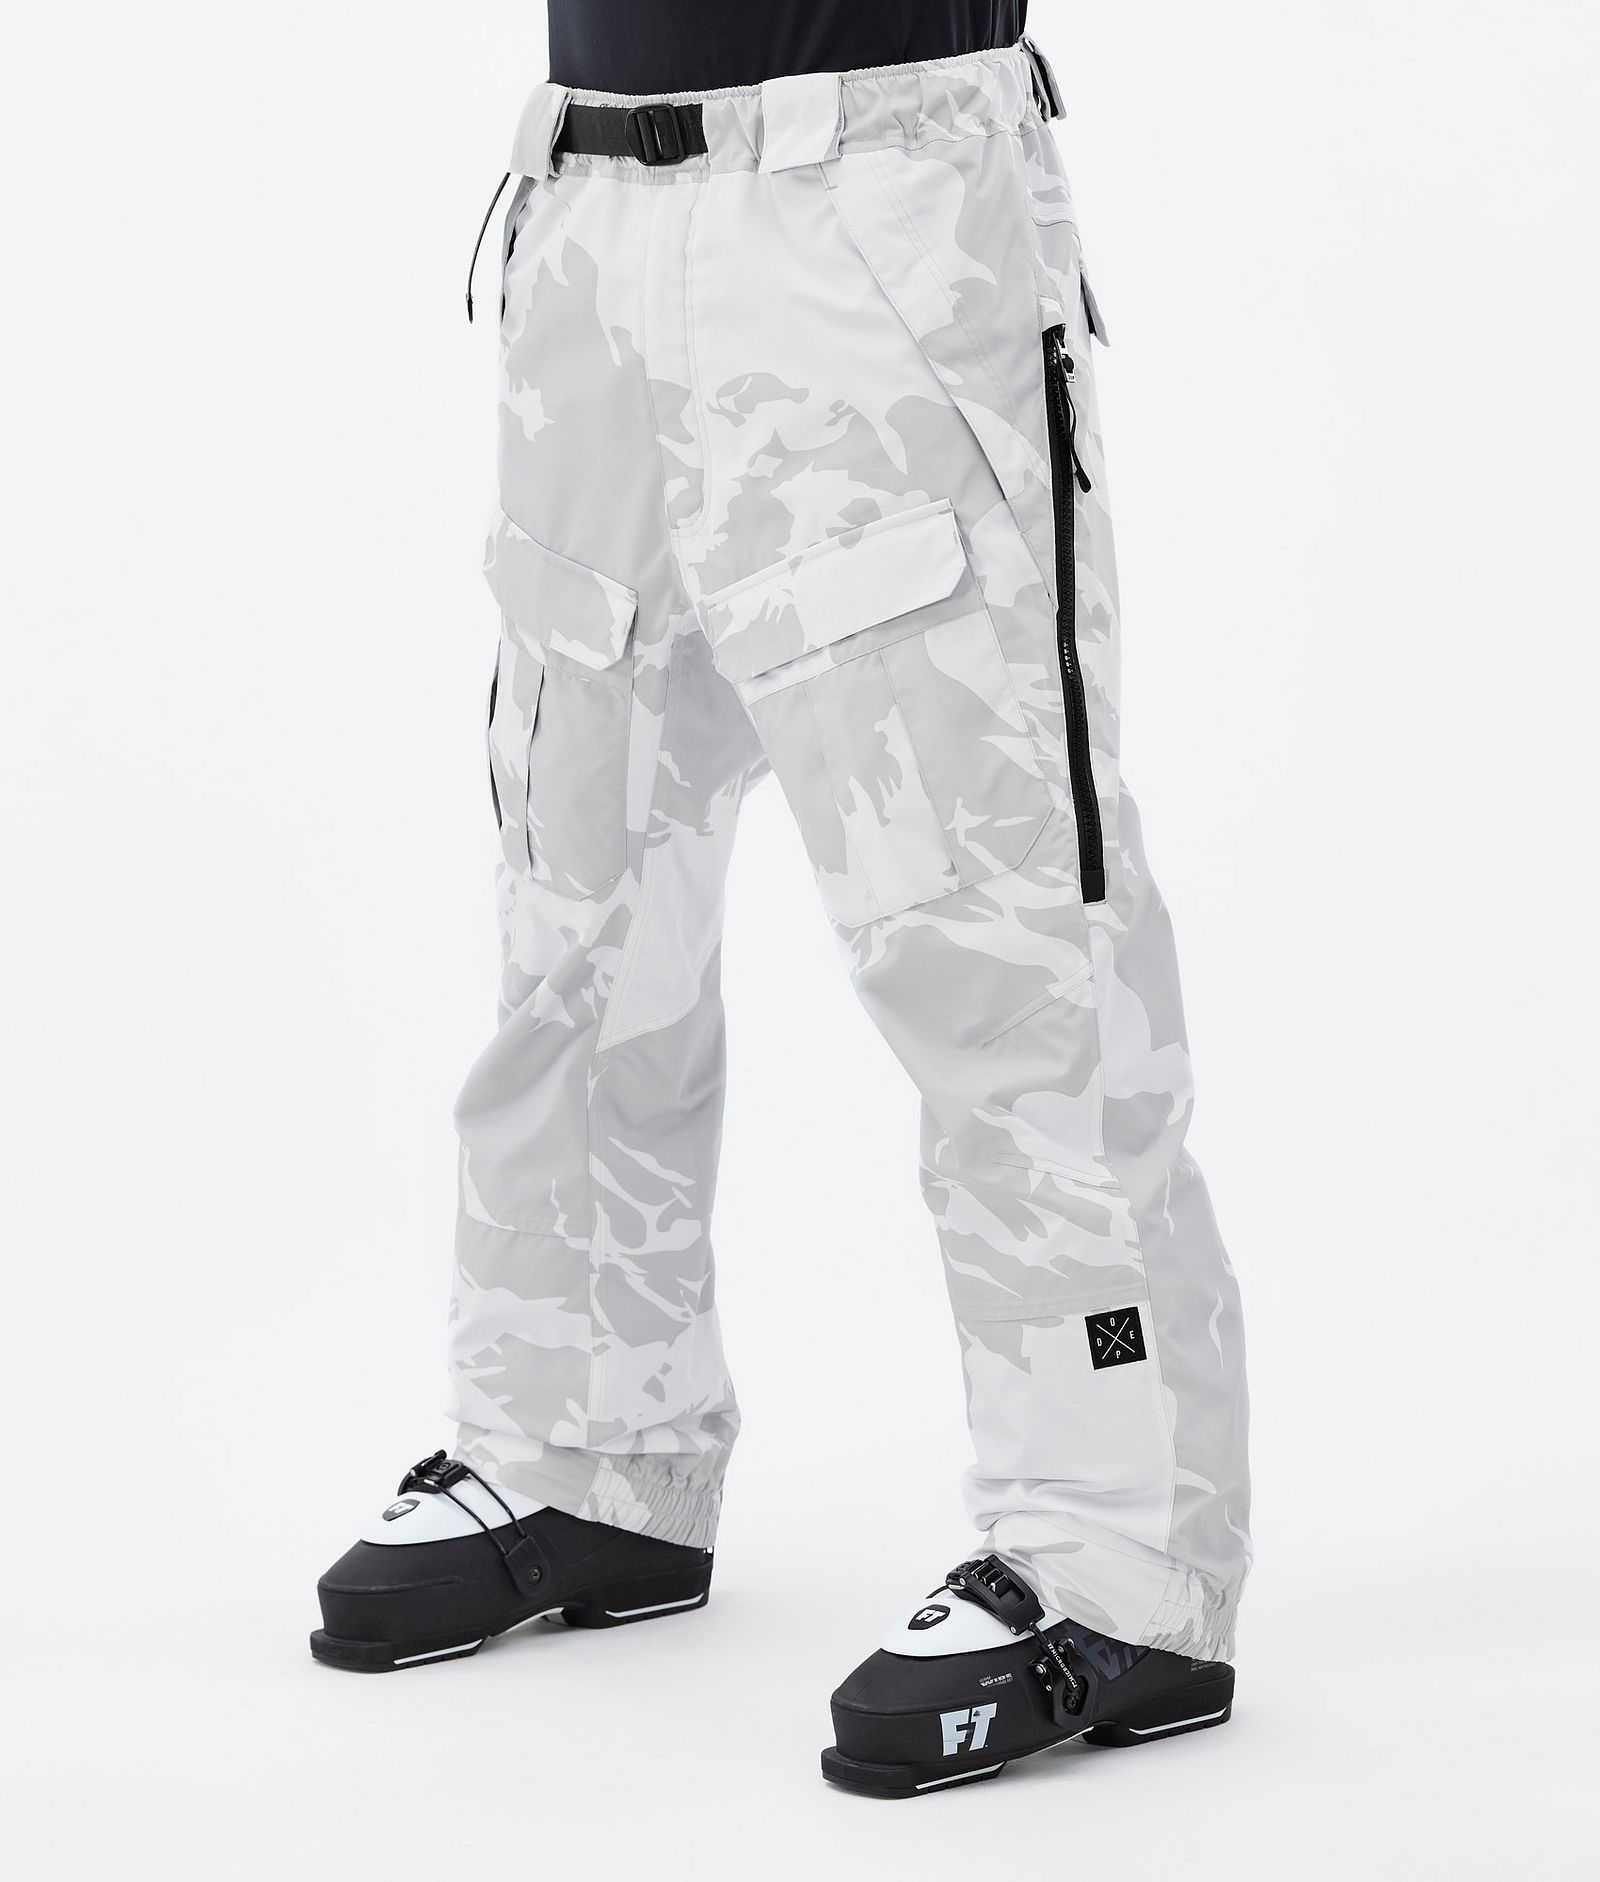 Dope Antek 2022 Ski Pants Men Grey Camo, Image 1 of 6